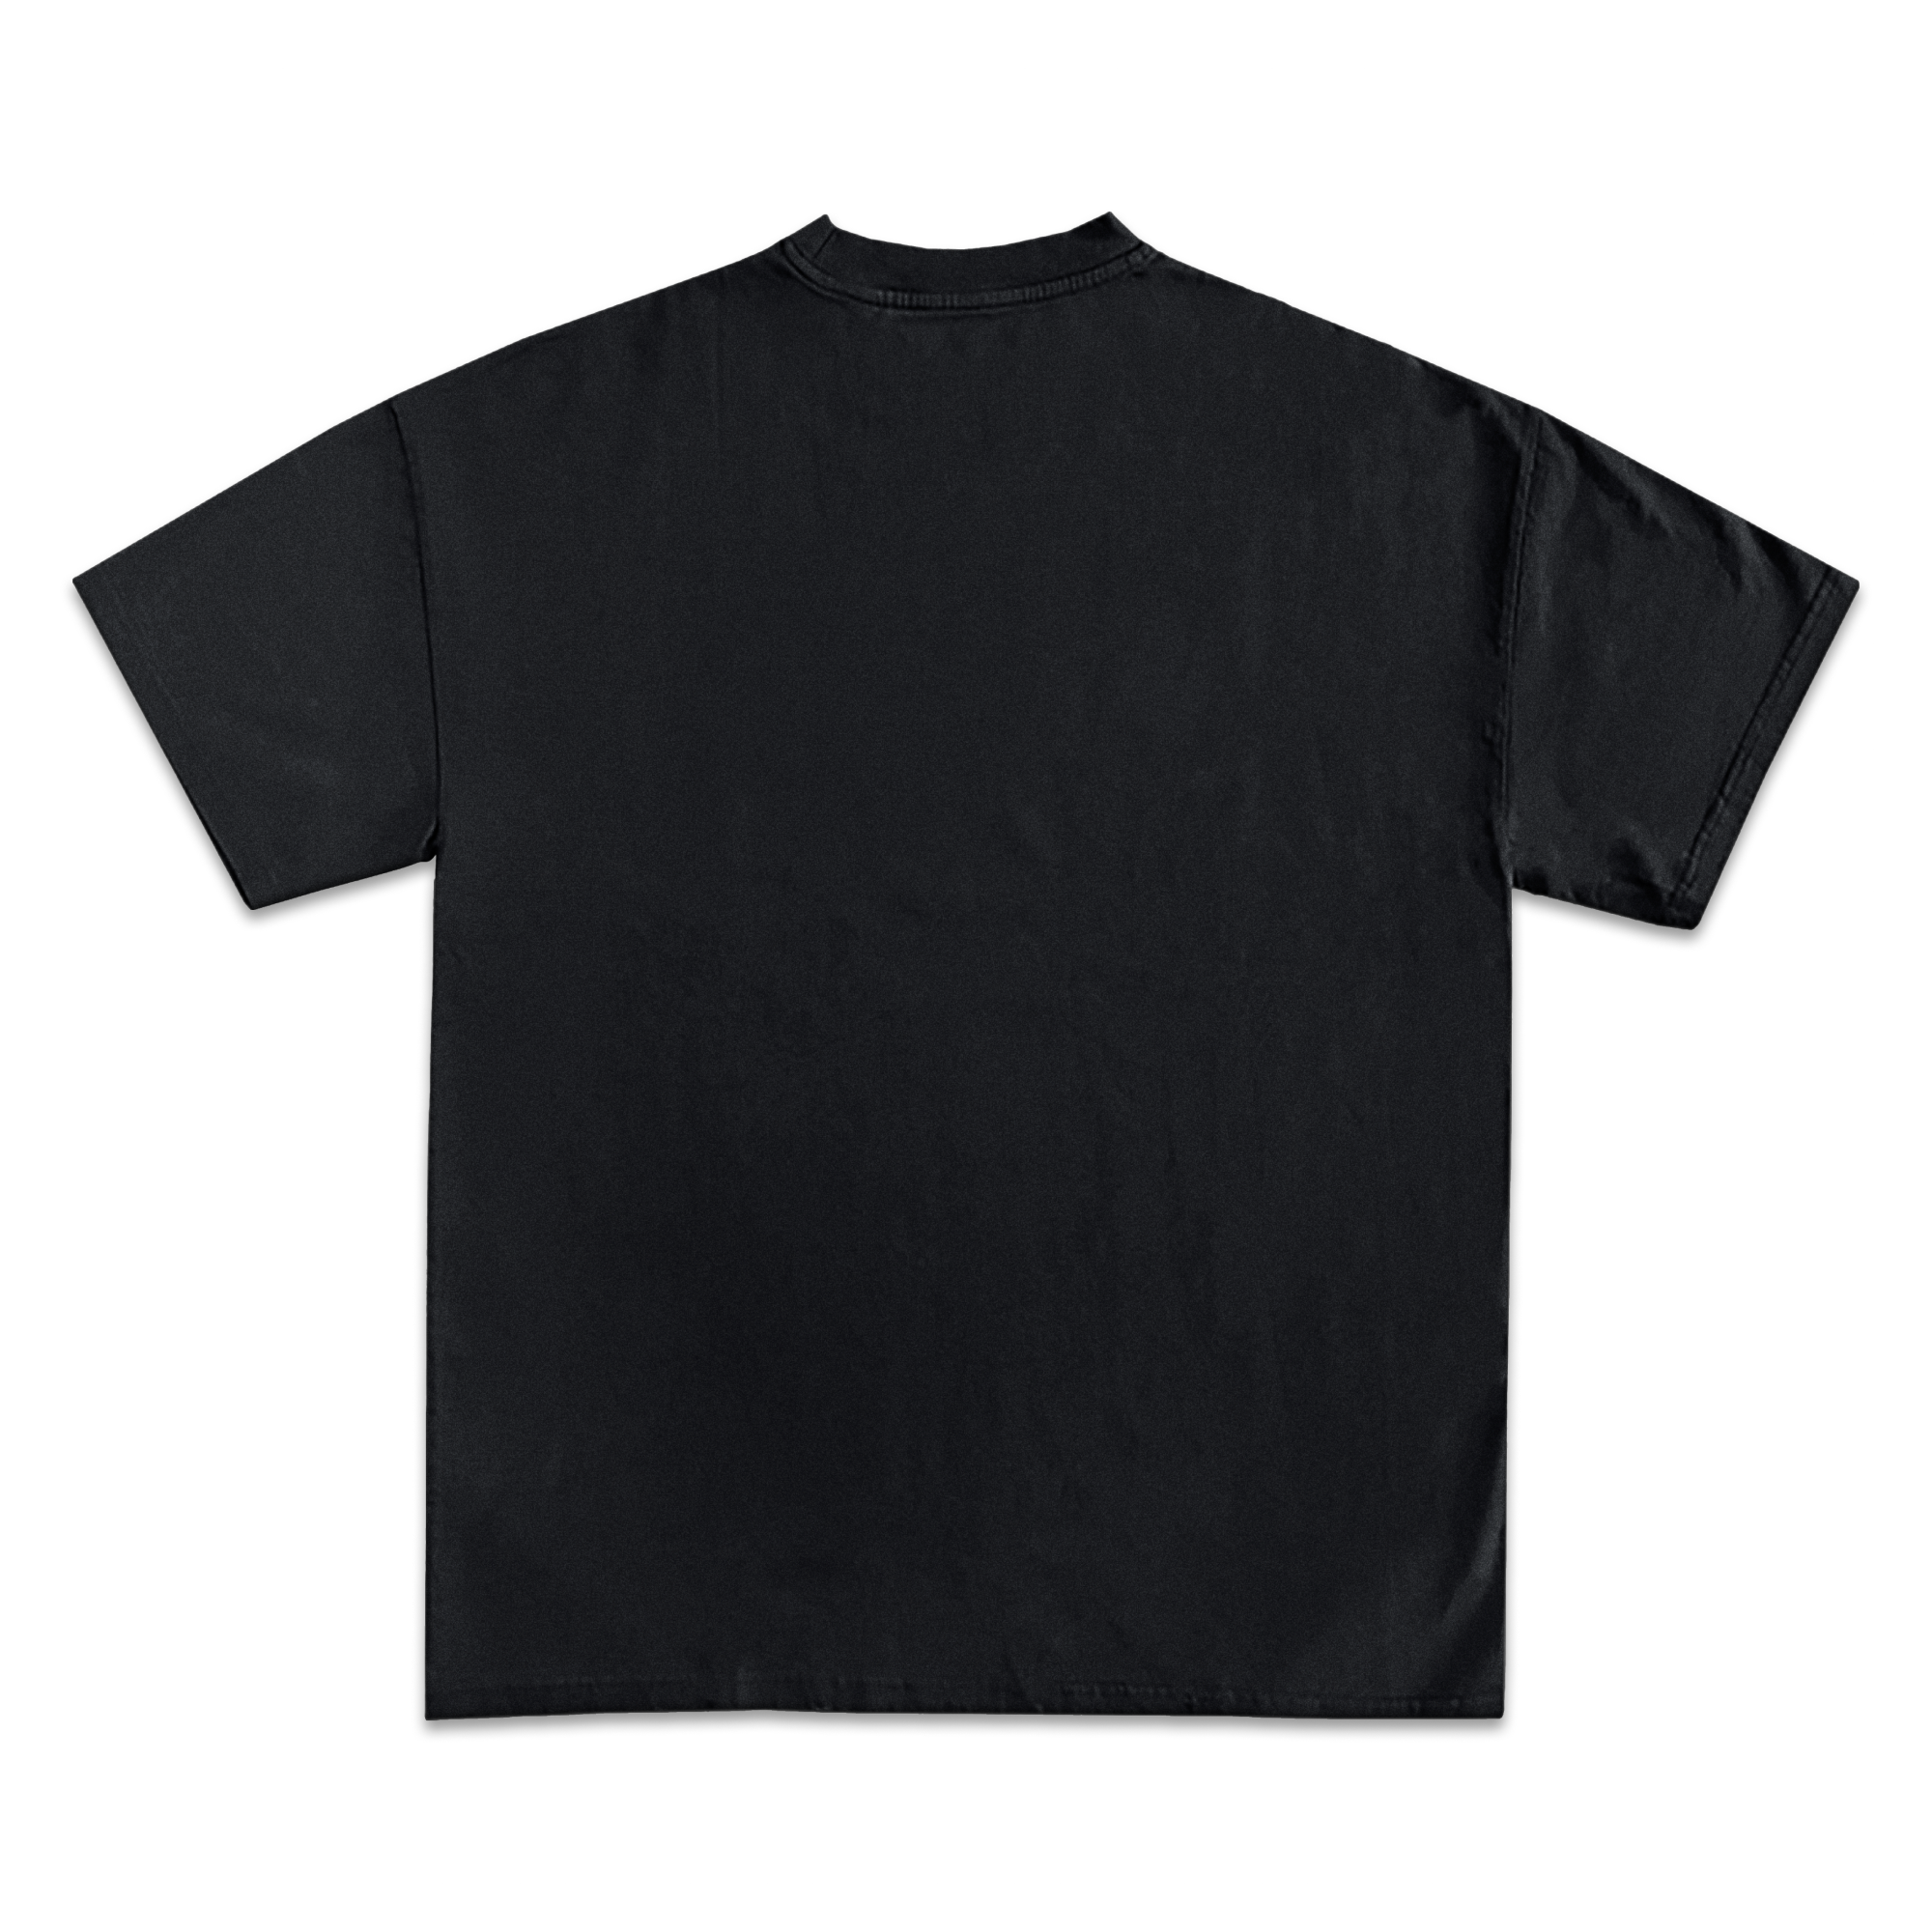 Yeat Graphic T-Shirt